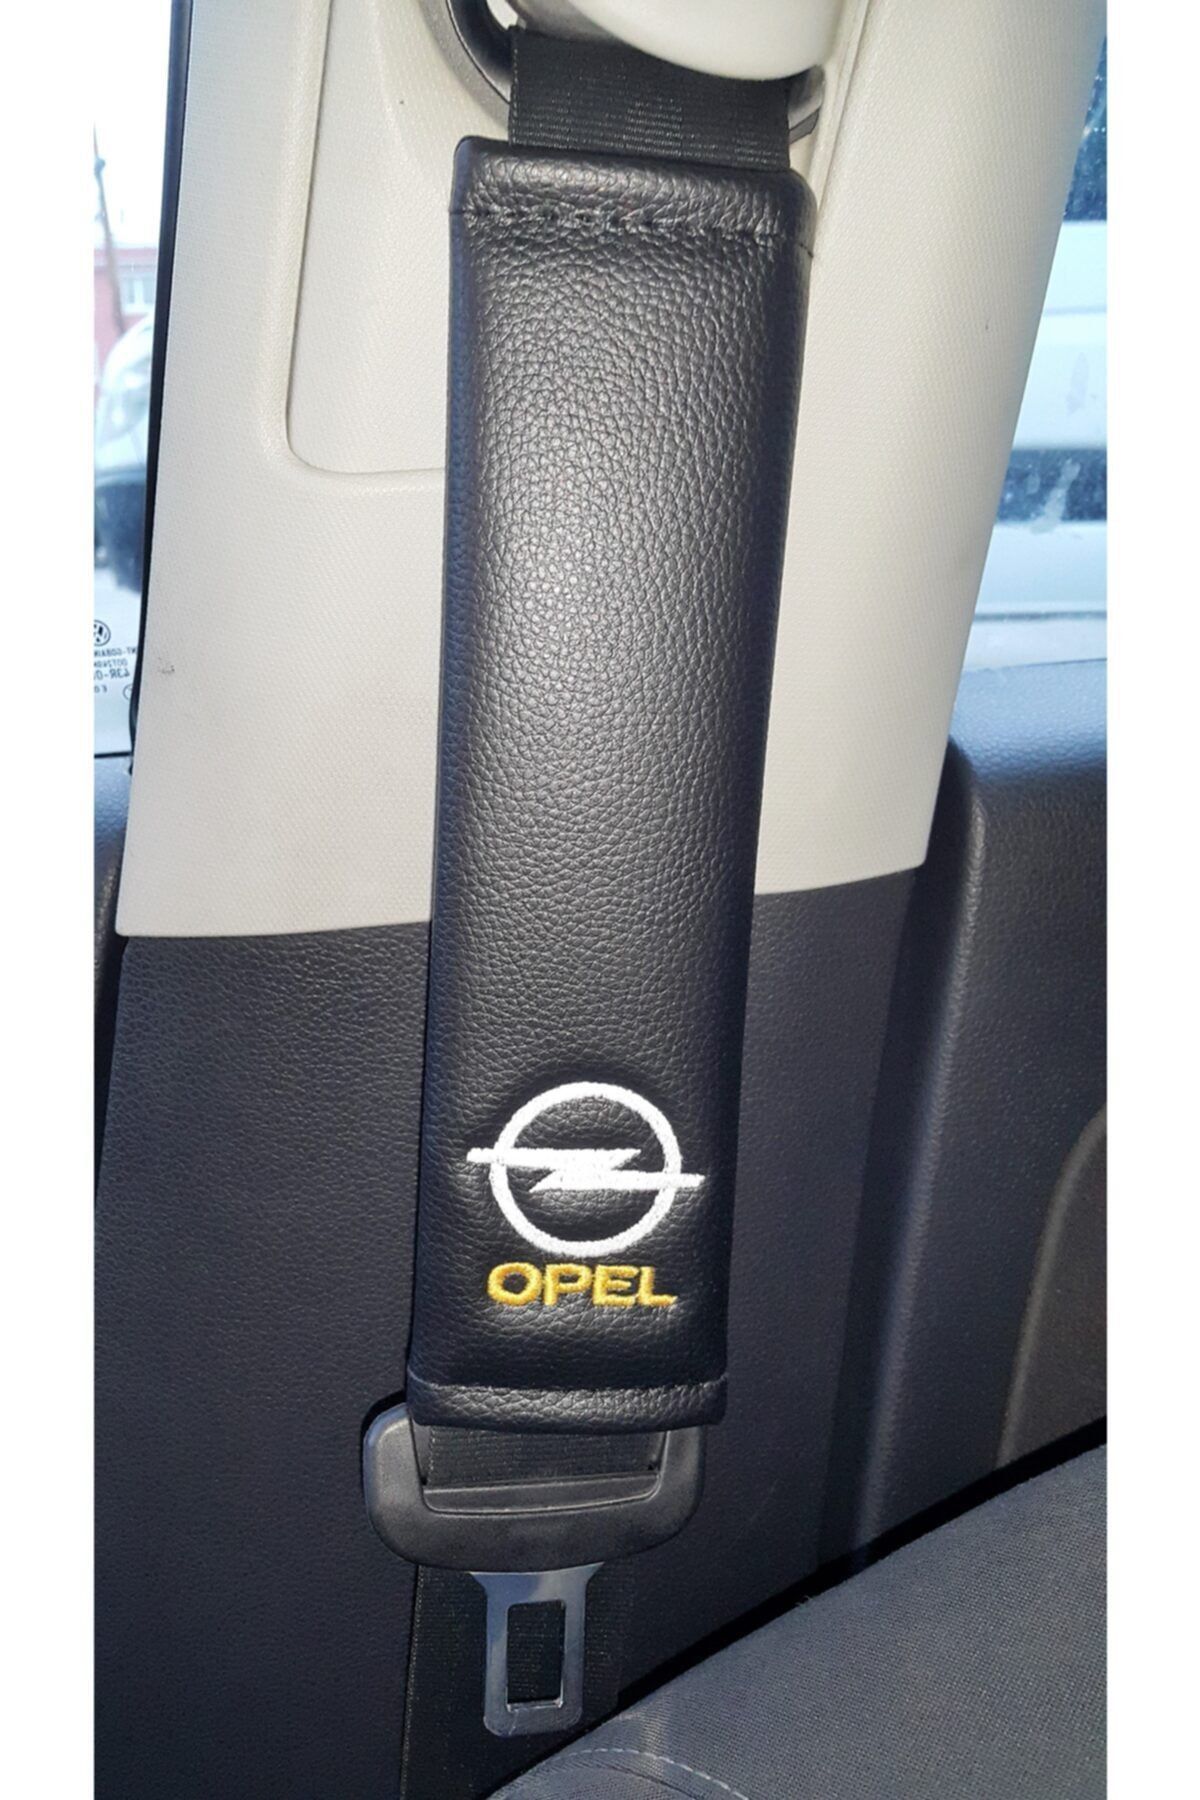 Genel Markalar Opel Deri Emniyet Kemer Kılıfı Siyah Iki Adet